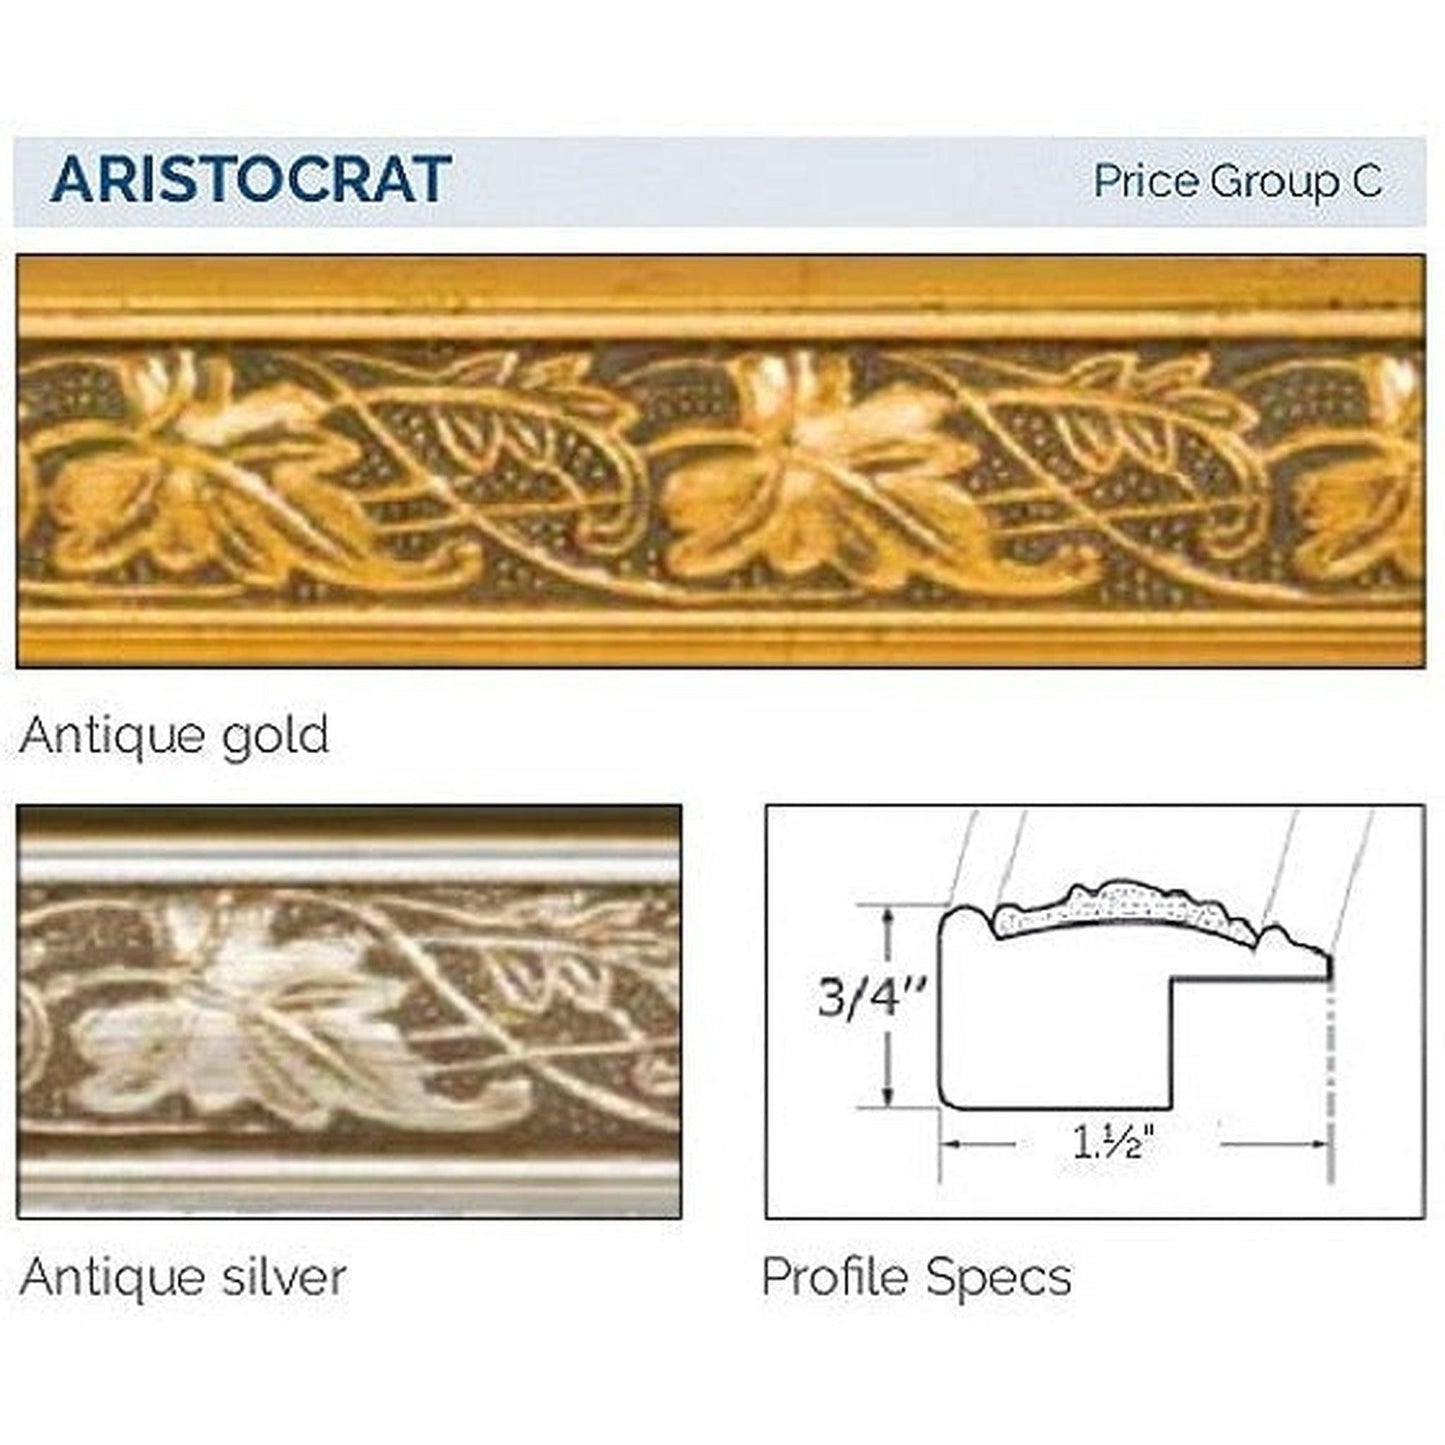 Afina Signature 17" x 26" Aristocrat Antique Gold Recessed Reversible Hinged Single Door Medicine Cabinet With Beveled Edge Mirror